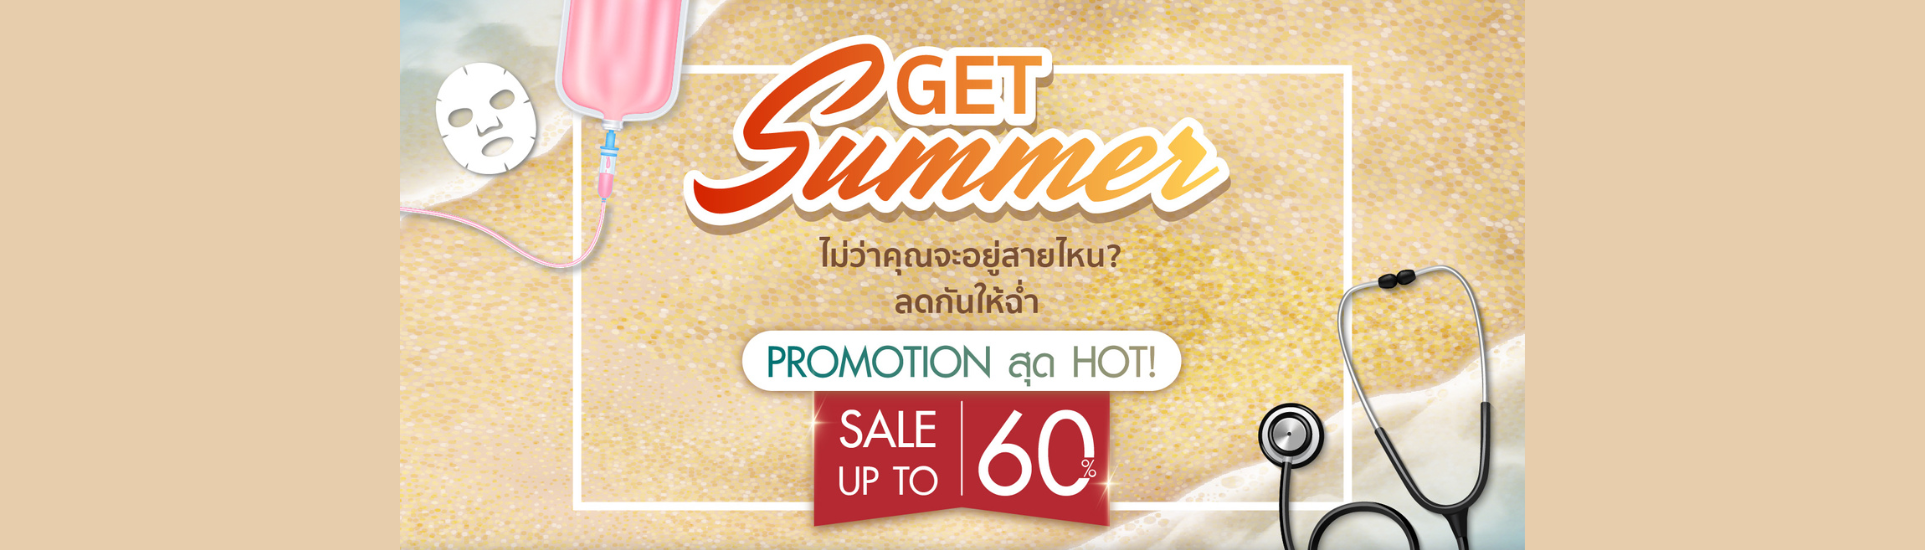 Get Summer-samitivejthonburi-slide